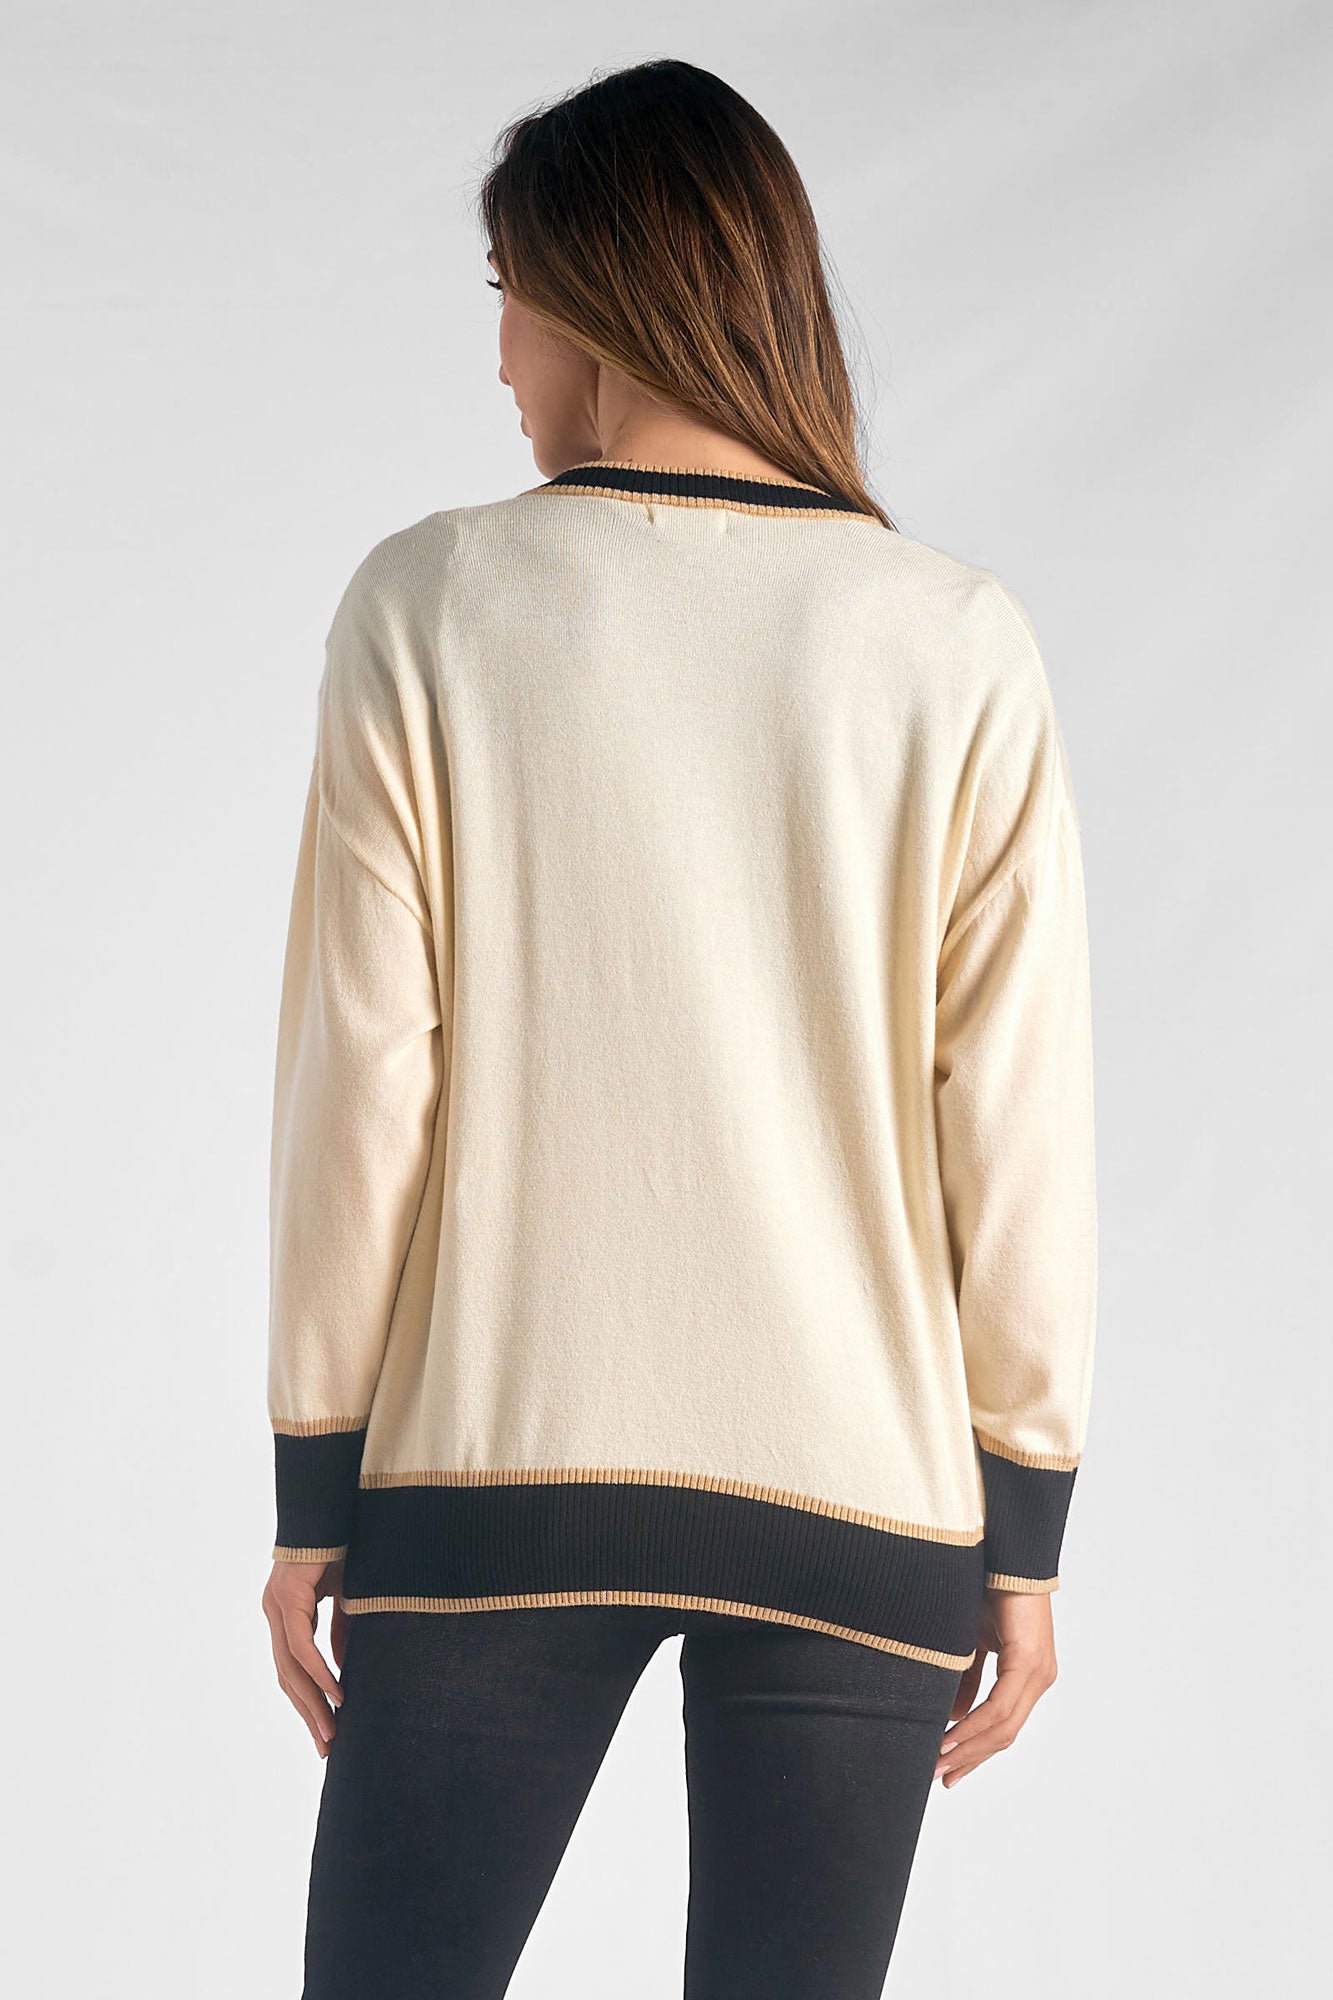 Elan Off White/Black Cardigan Sweater